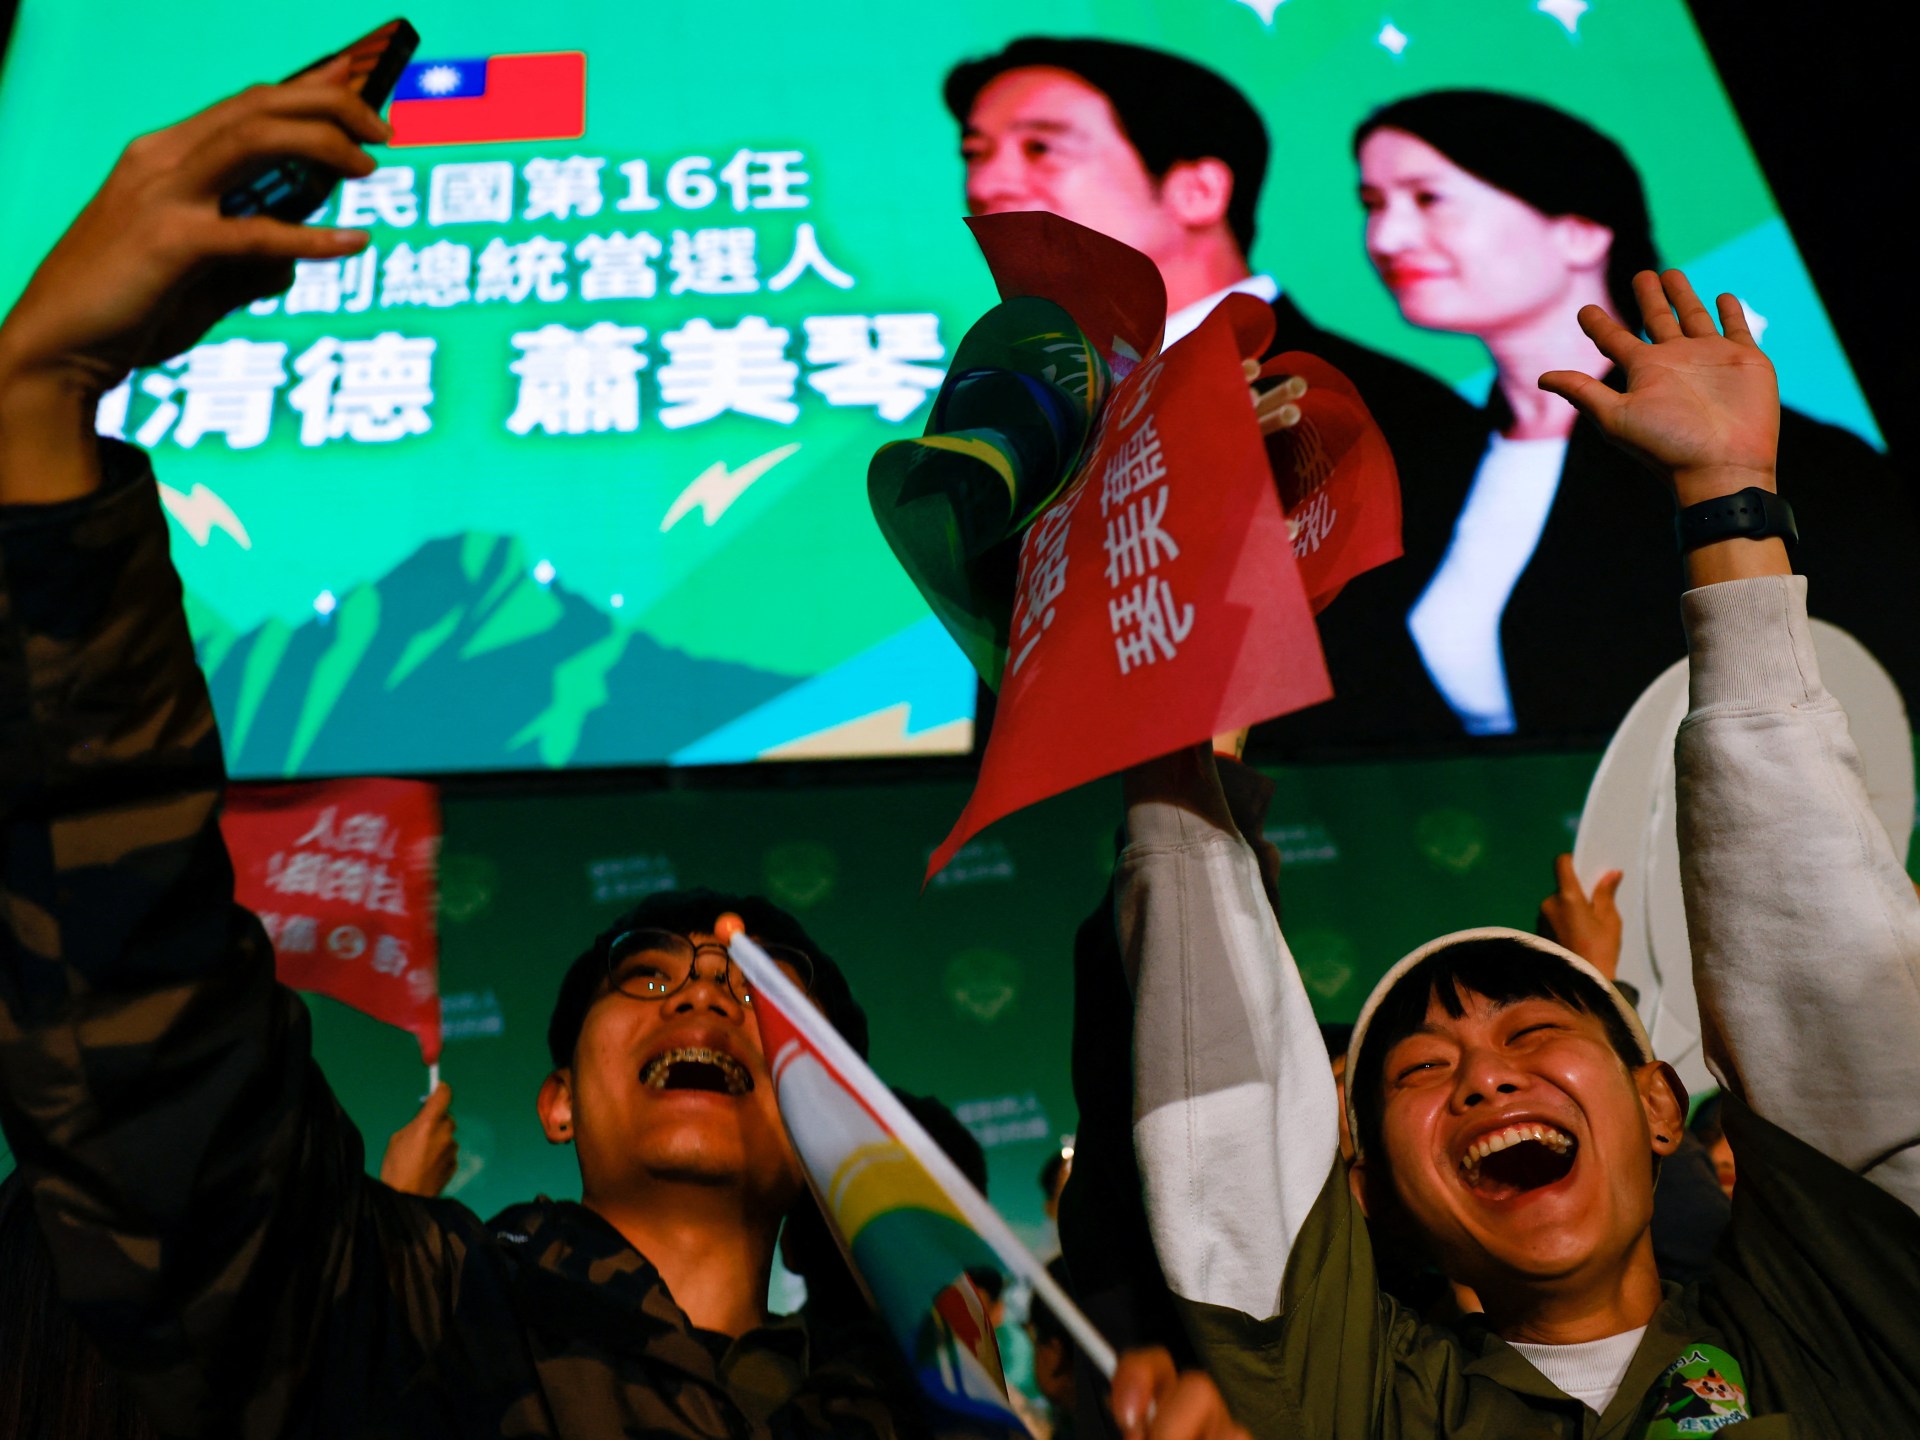 نيوزويك: انتخابات تايوان قد تغير العالم | جولة الصحافة – البوكس نيوز